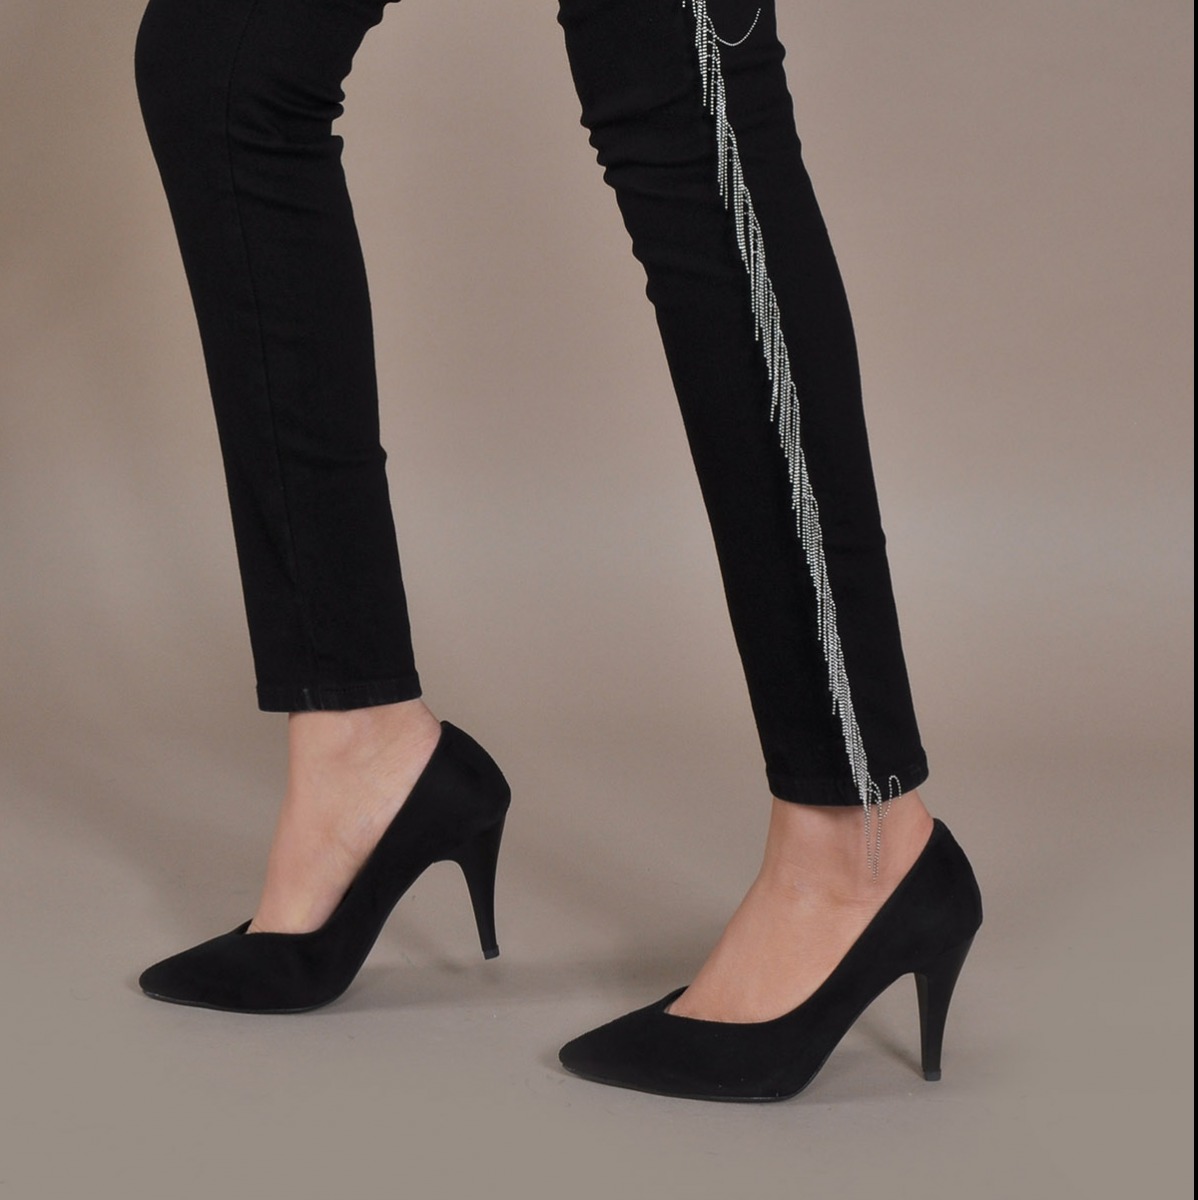 Flo Kadın  Siyah-Süet Klasik Topuklu Ayakkabı VZN20-003Y. 1